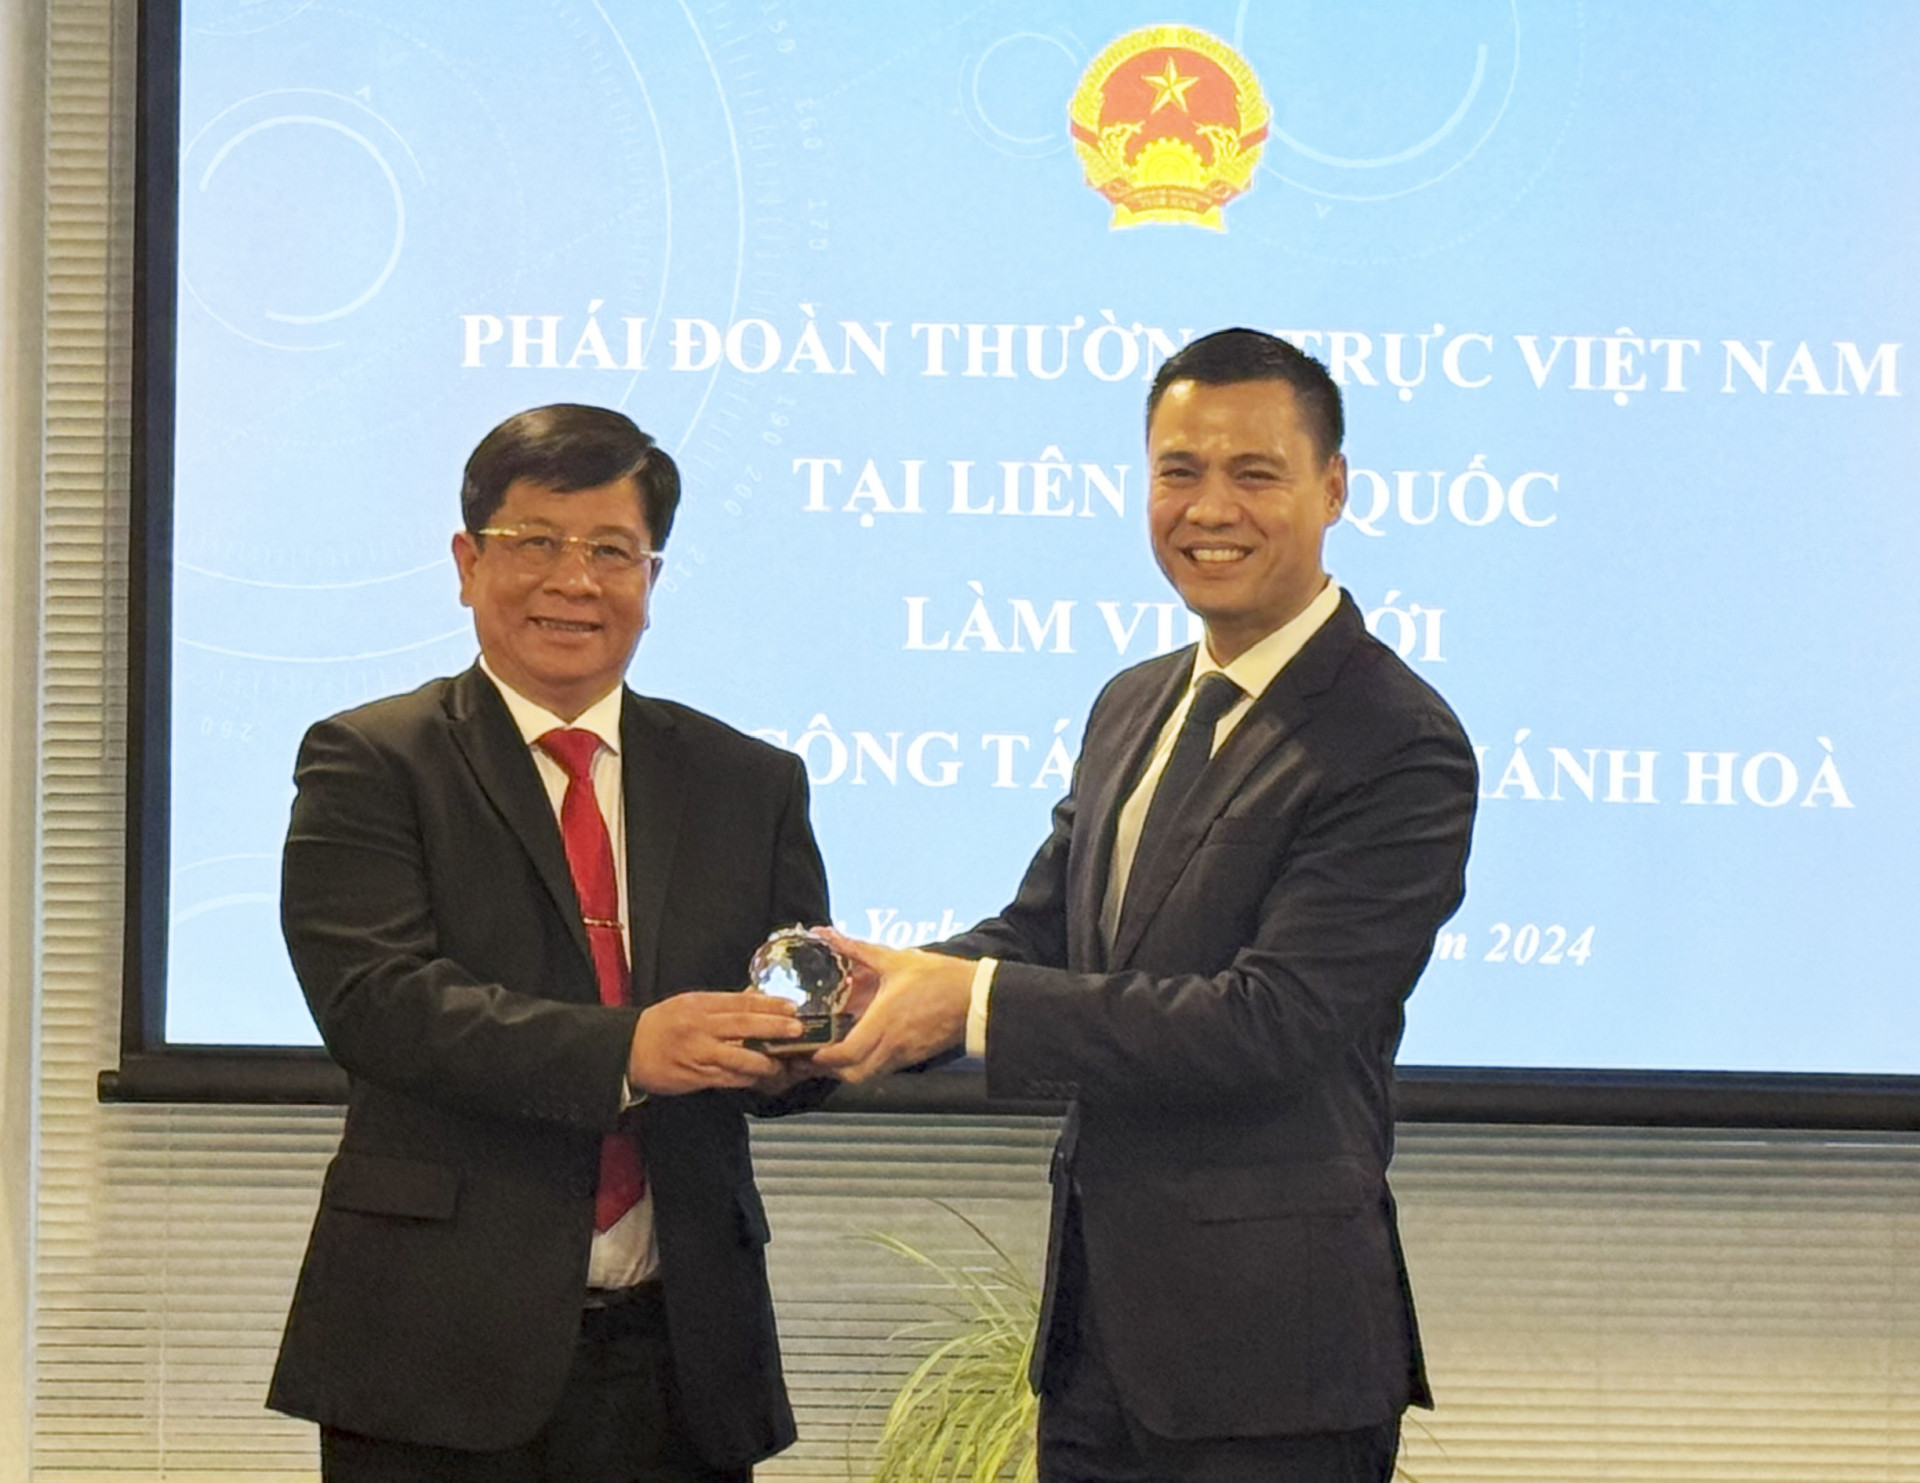 Đại sứ Đặng Hoàng Giang tặng quà lưu niệm cho ông Hồ Văn Mừng - Ủy viên Dự khuyết Trung ương Đảng, Bí thư Thành ủy Nha Trang.